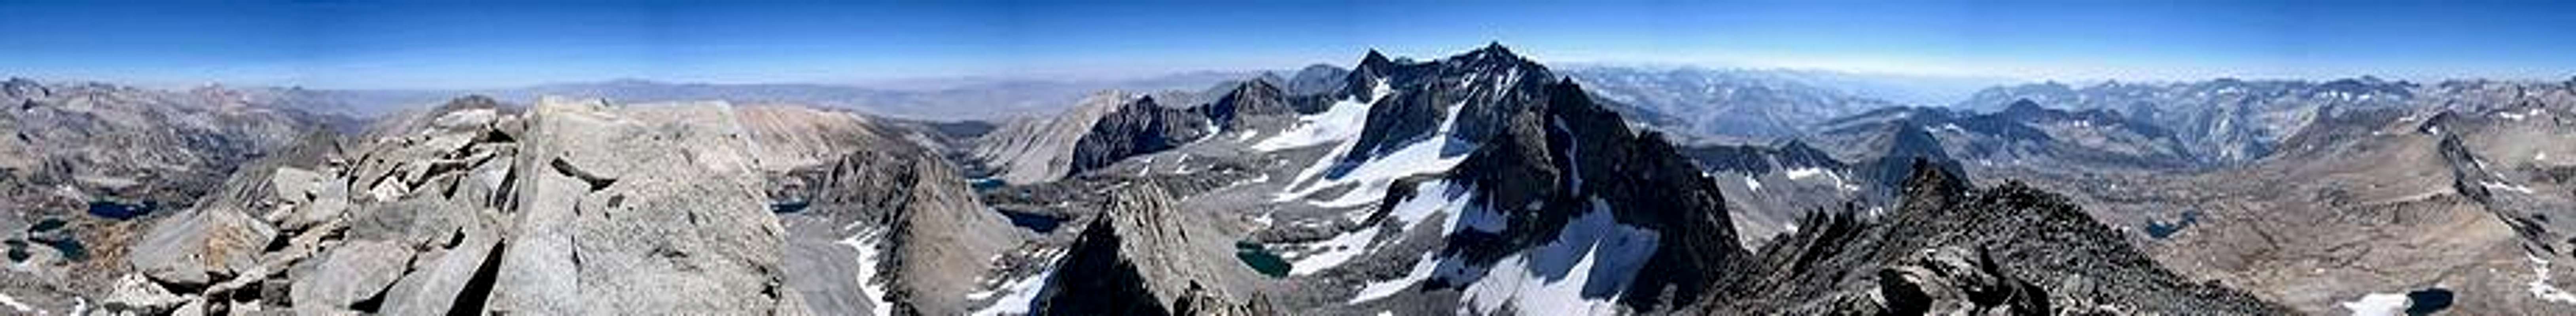 Mt Agassiz Panorama